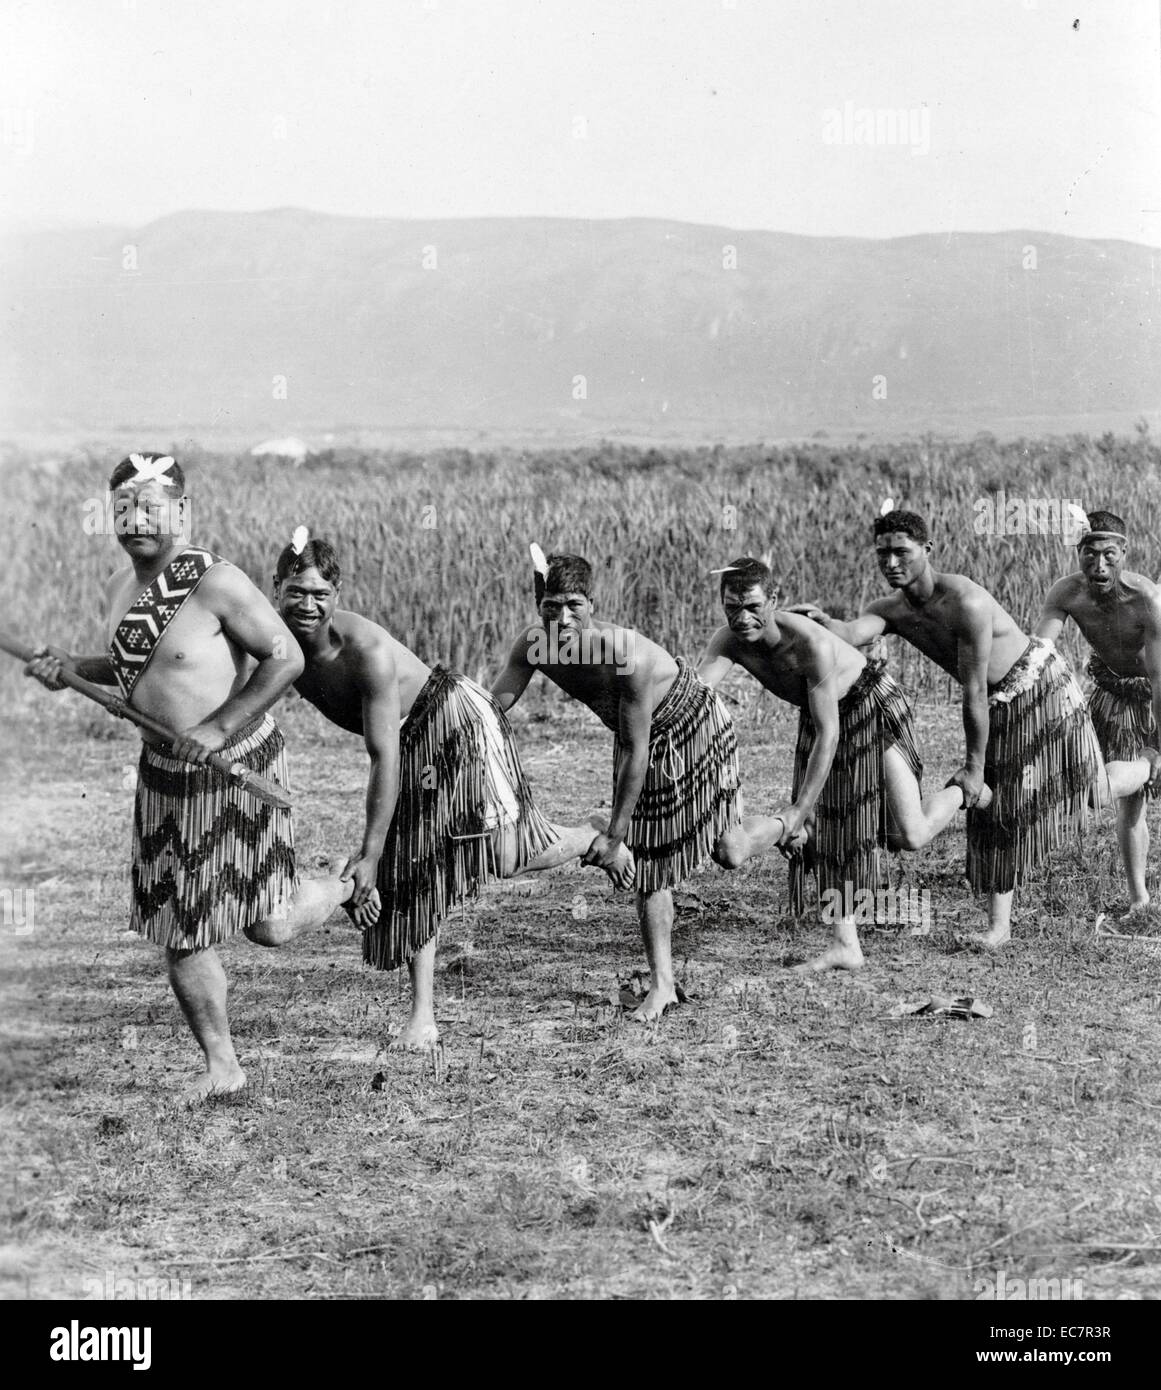 Foto von fünf Māori-Männer in traditioneller Kleidung, die Durchführung der  Haka Tanz. Haka ist ein traditionelles ancestral Schlachtruf, Tanz oder  Herausforderung von den Māori Menschen in Neuseeland. Vom 1900  Stockfotografie - Alamy